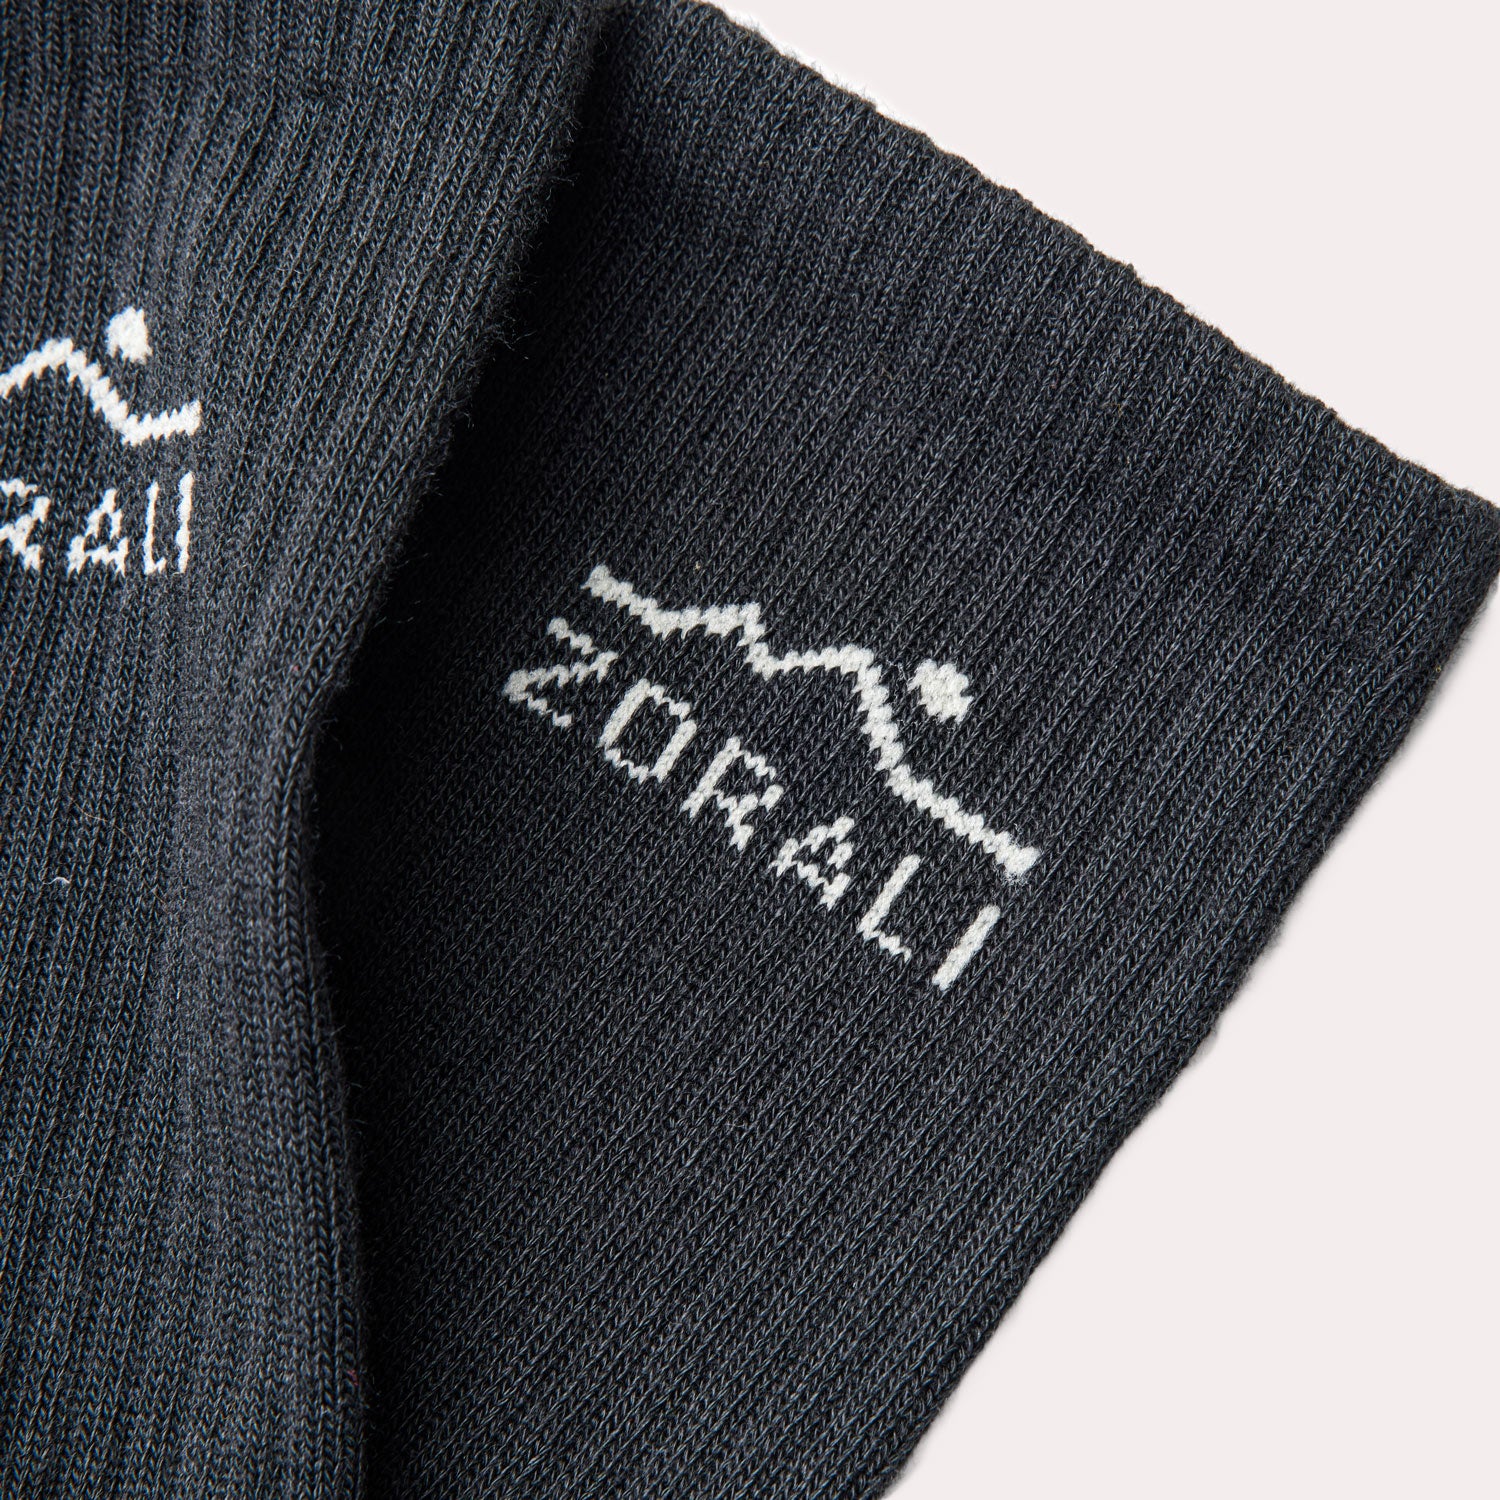 Trek-Ready Coolmax® Socks Black